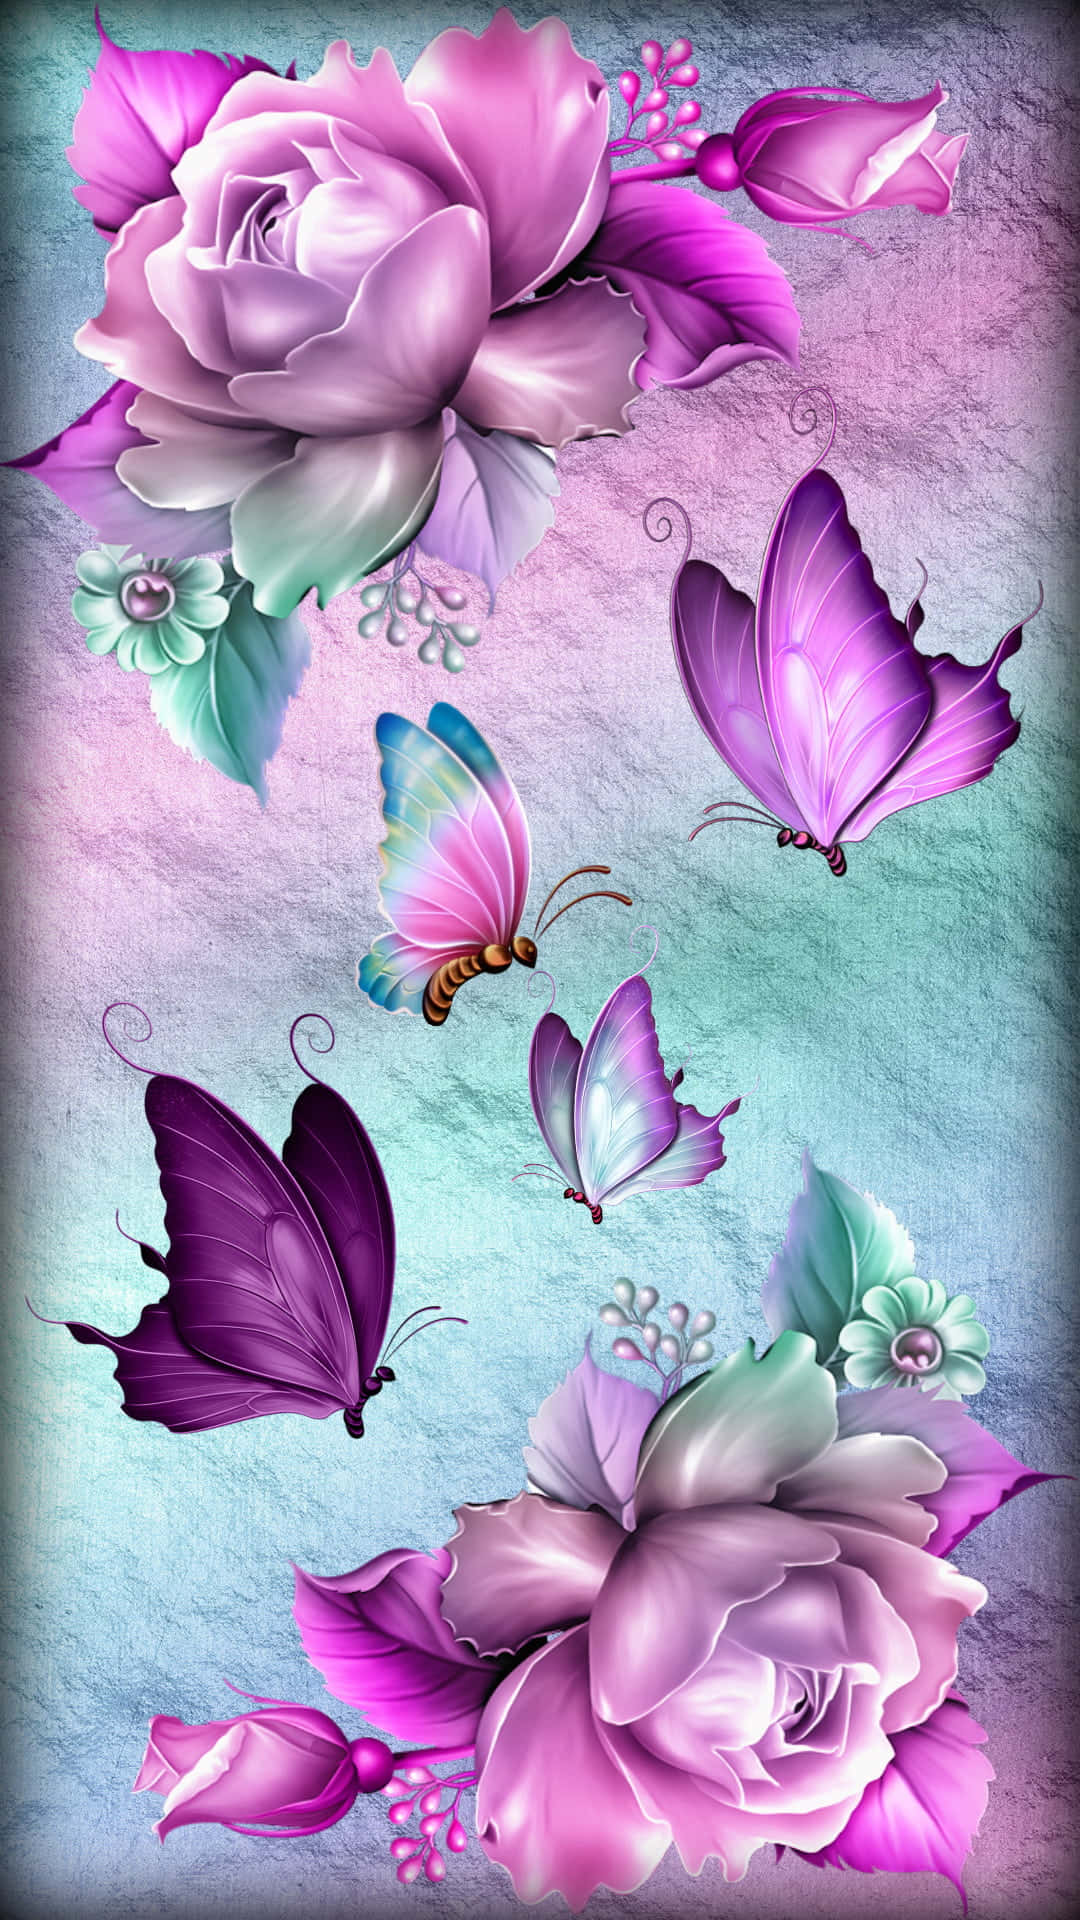 Enrosa Och Lila Blomma Med Fjärilar På Den